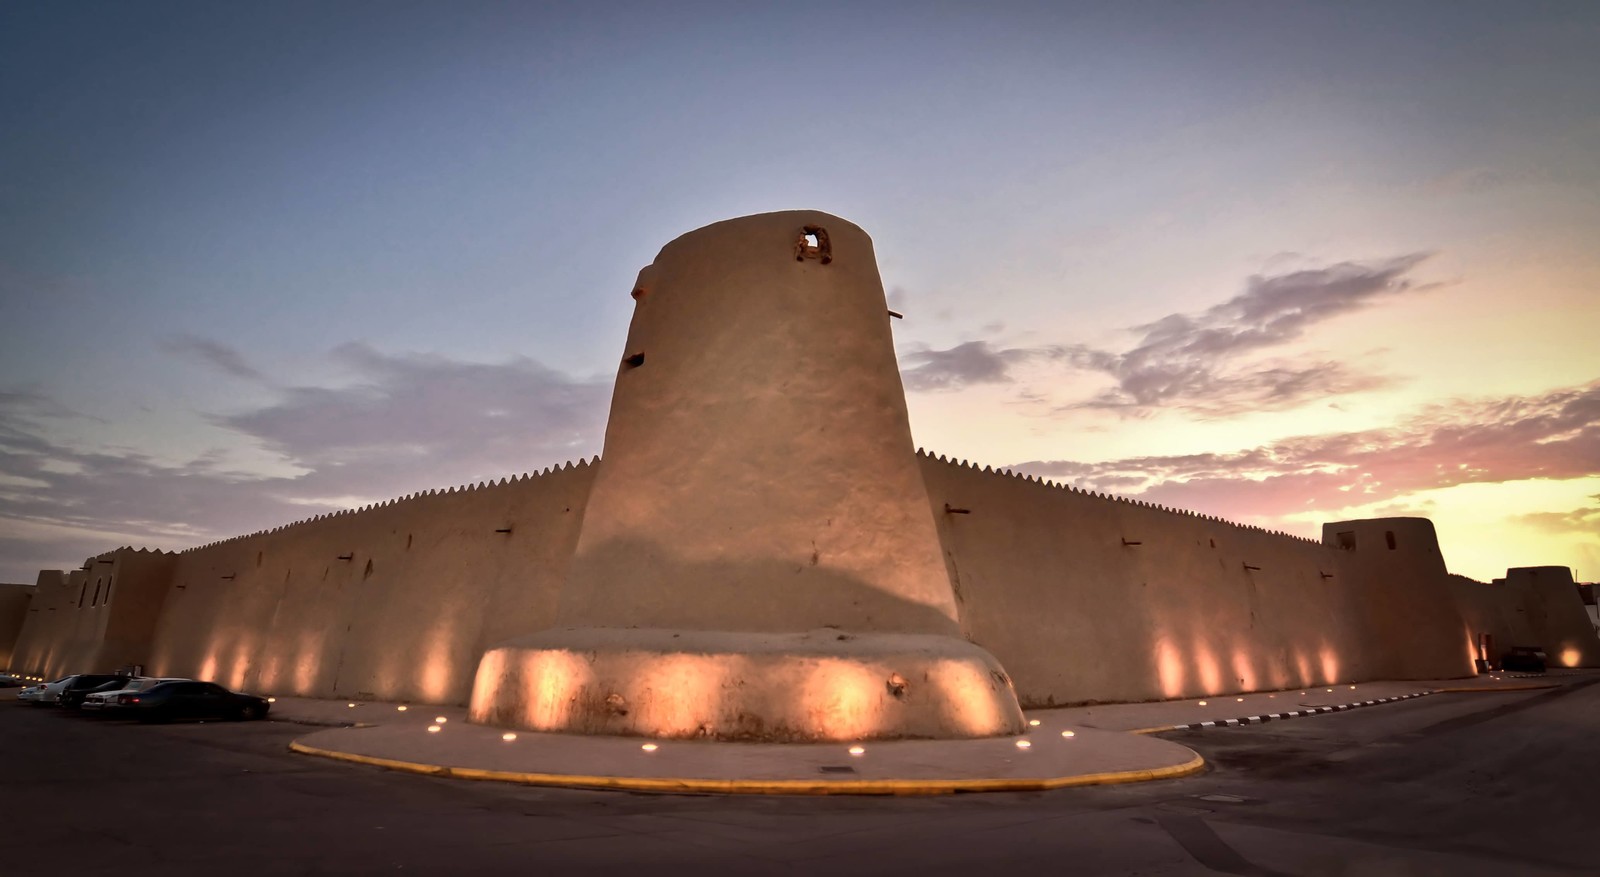 قصر إبراهيم الأثري من أفخم أماكن سياحية في الأحساء